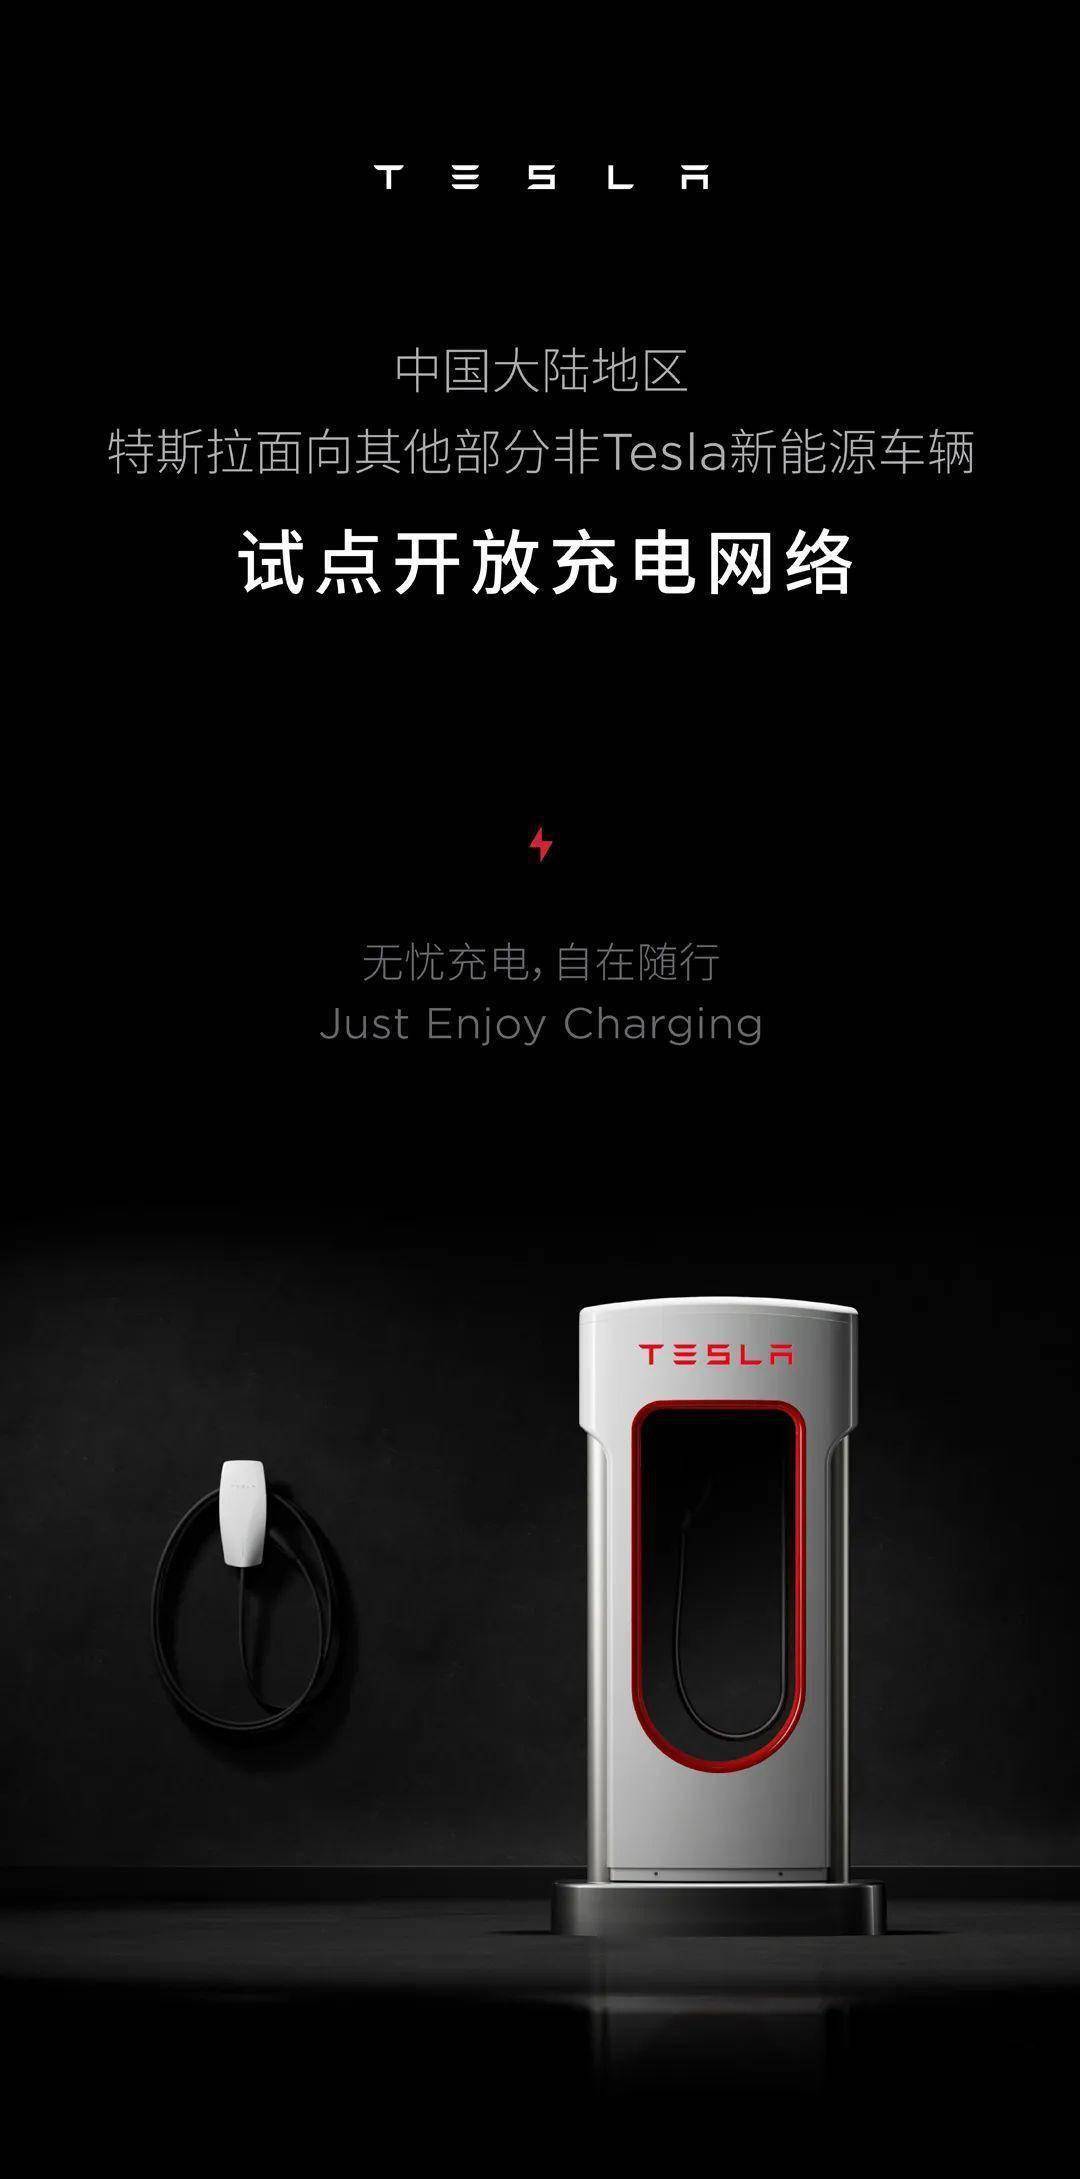 特斯拉中国大陆地区首批试点开放10座超级充电站 面向37款非Tesla车型